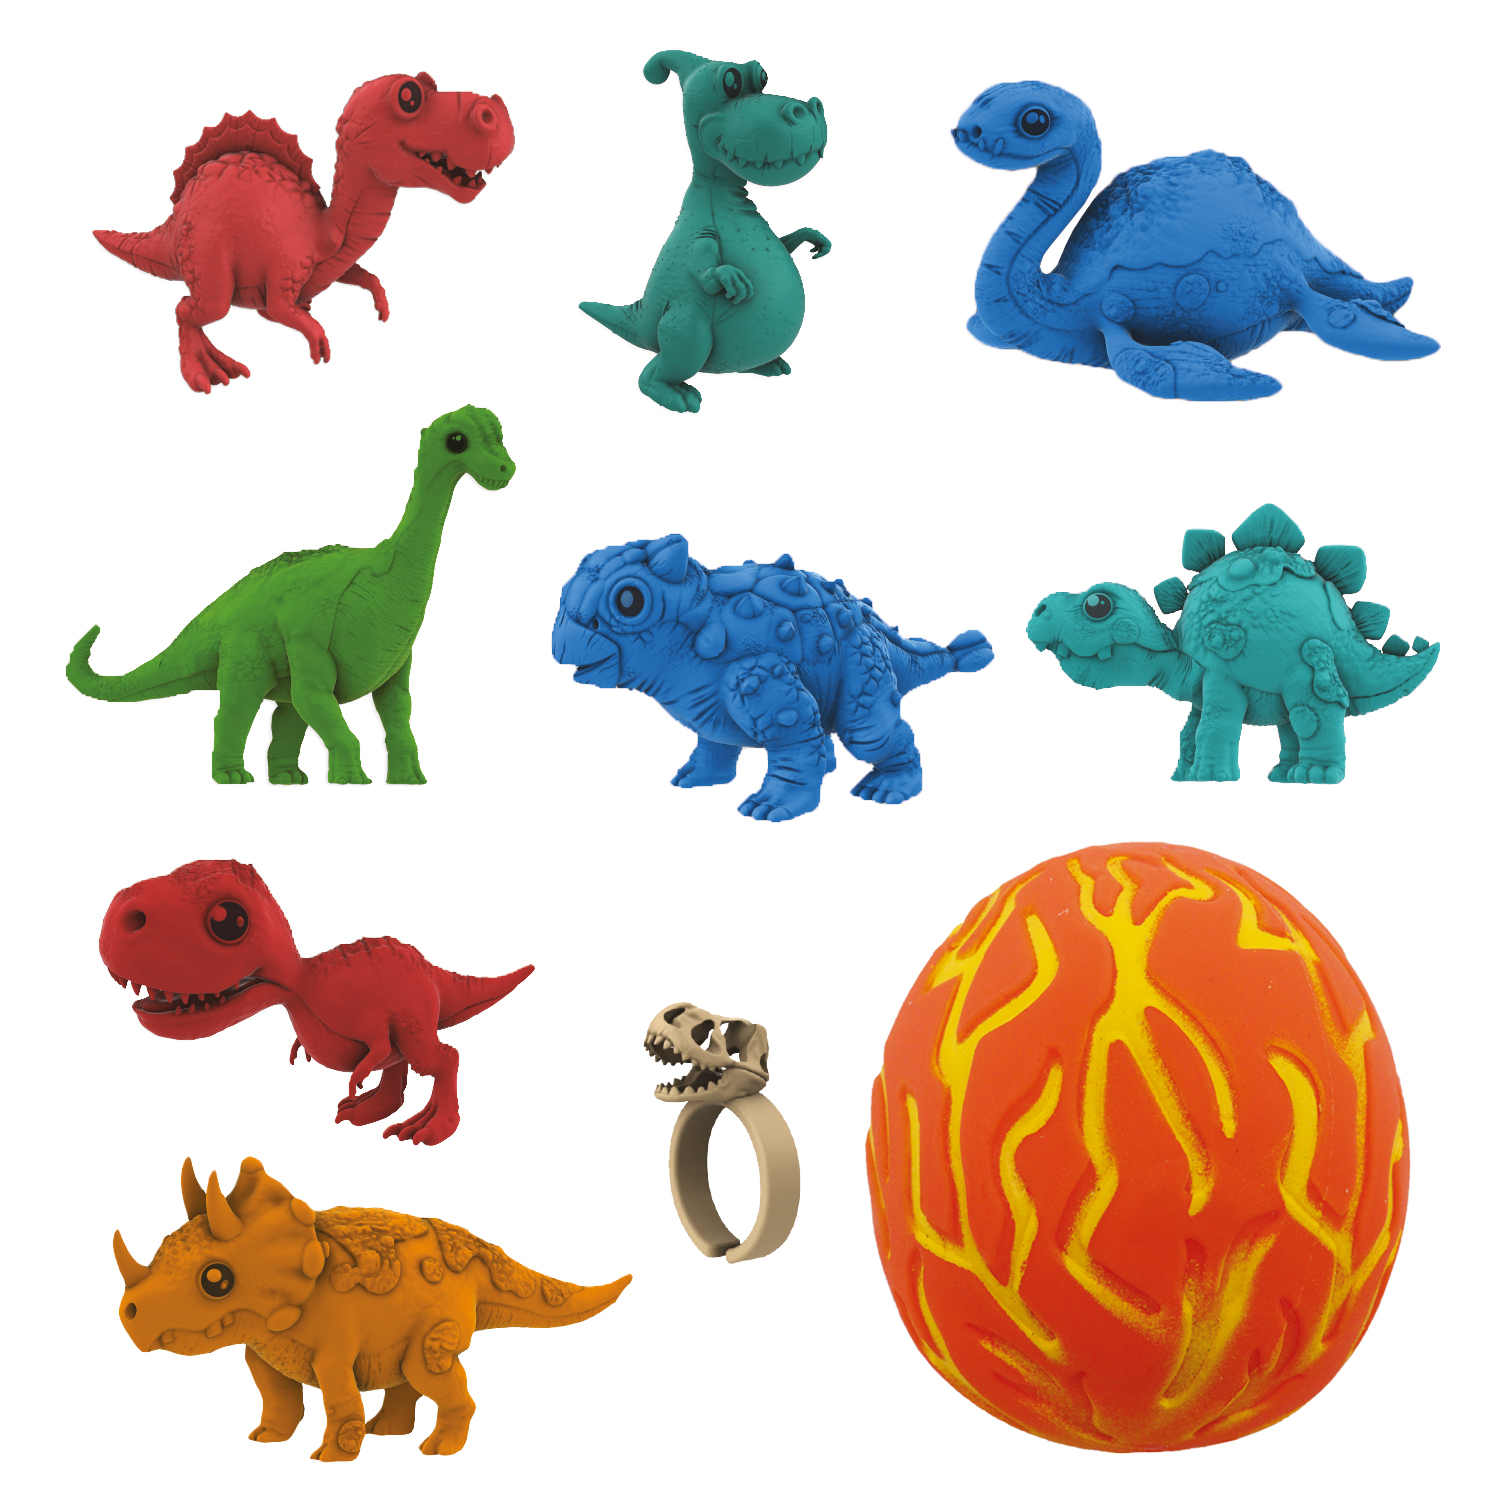 Коллекционная фигурка-сюрприз динозавра в яйце-сквише Lava Egg, 8 героев, Crazy Dino, CD02 интерактивная игрушка kiddieplay фигурка динозавра трицератопс